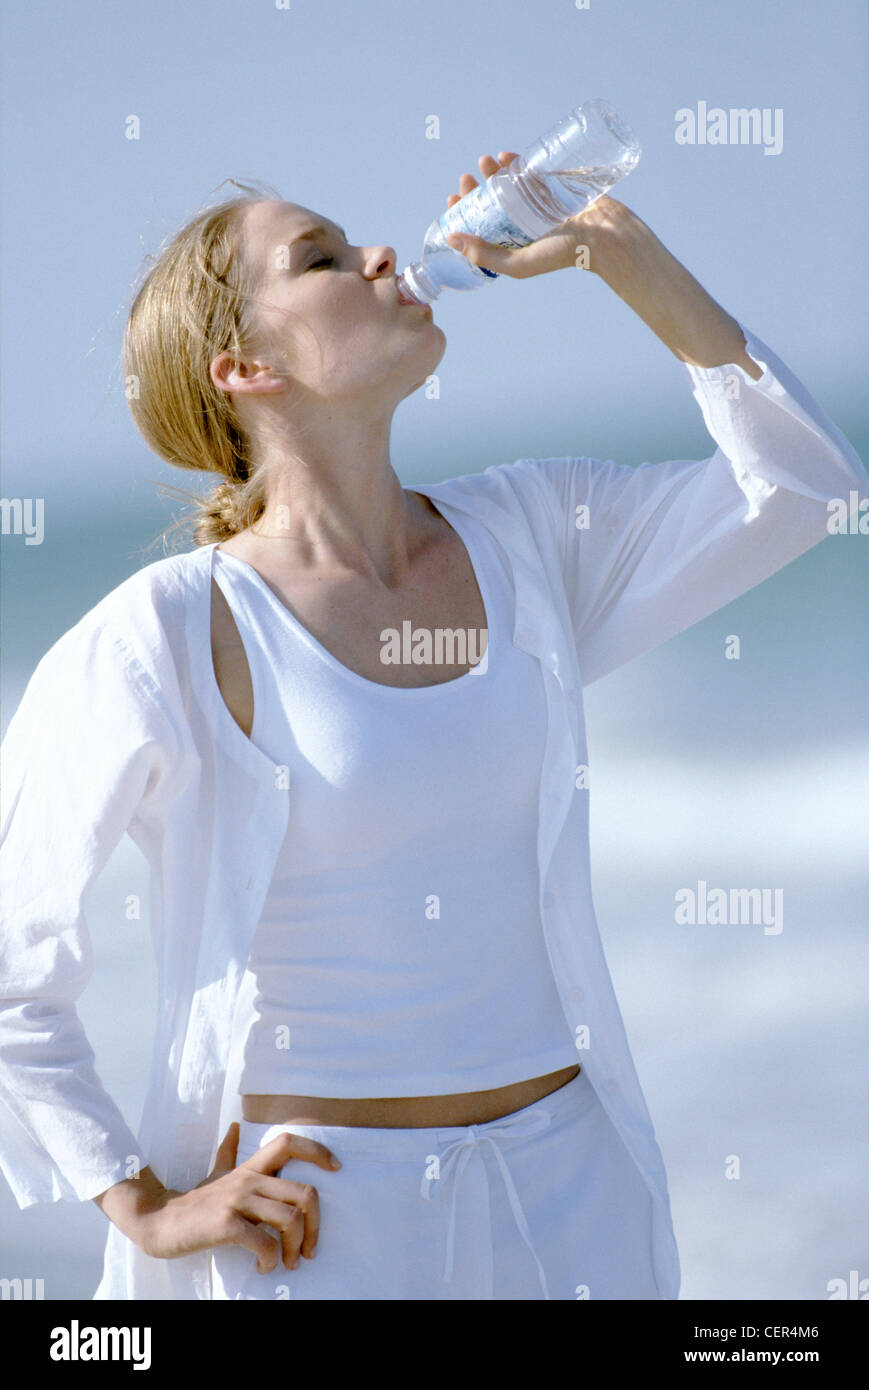 Weibliche blonde Haare aus Gesicht tragen weiße Weste Top, weiße Bluse und weiße  Baumwollhose, trinken aus der Flasche Wasser Stockfotografie - Alamy